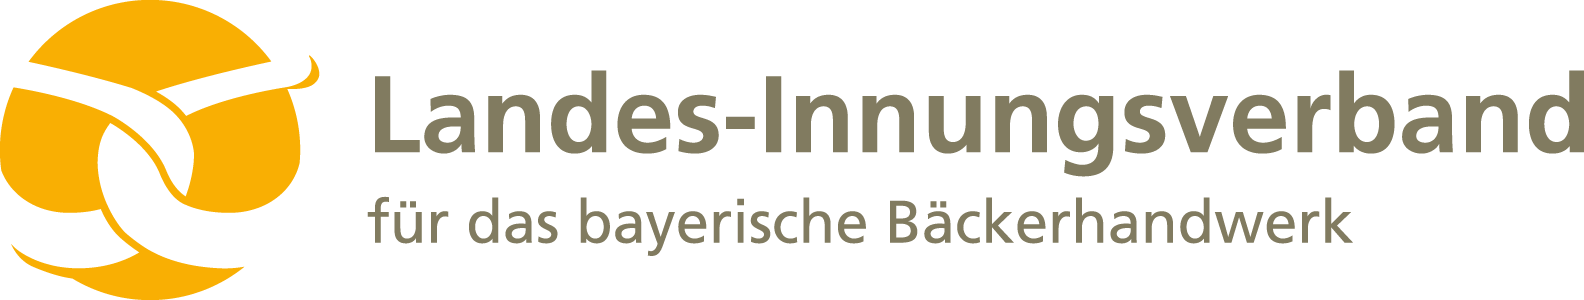 Landes-Innungsverband des bayerischen Bäckerhandwerks